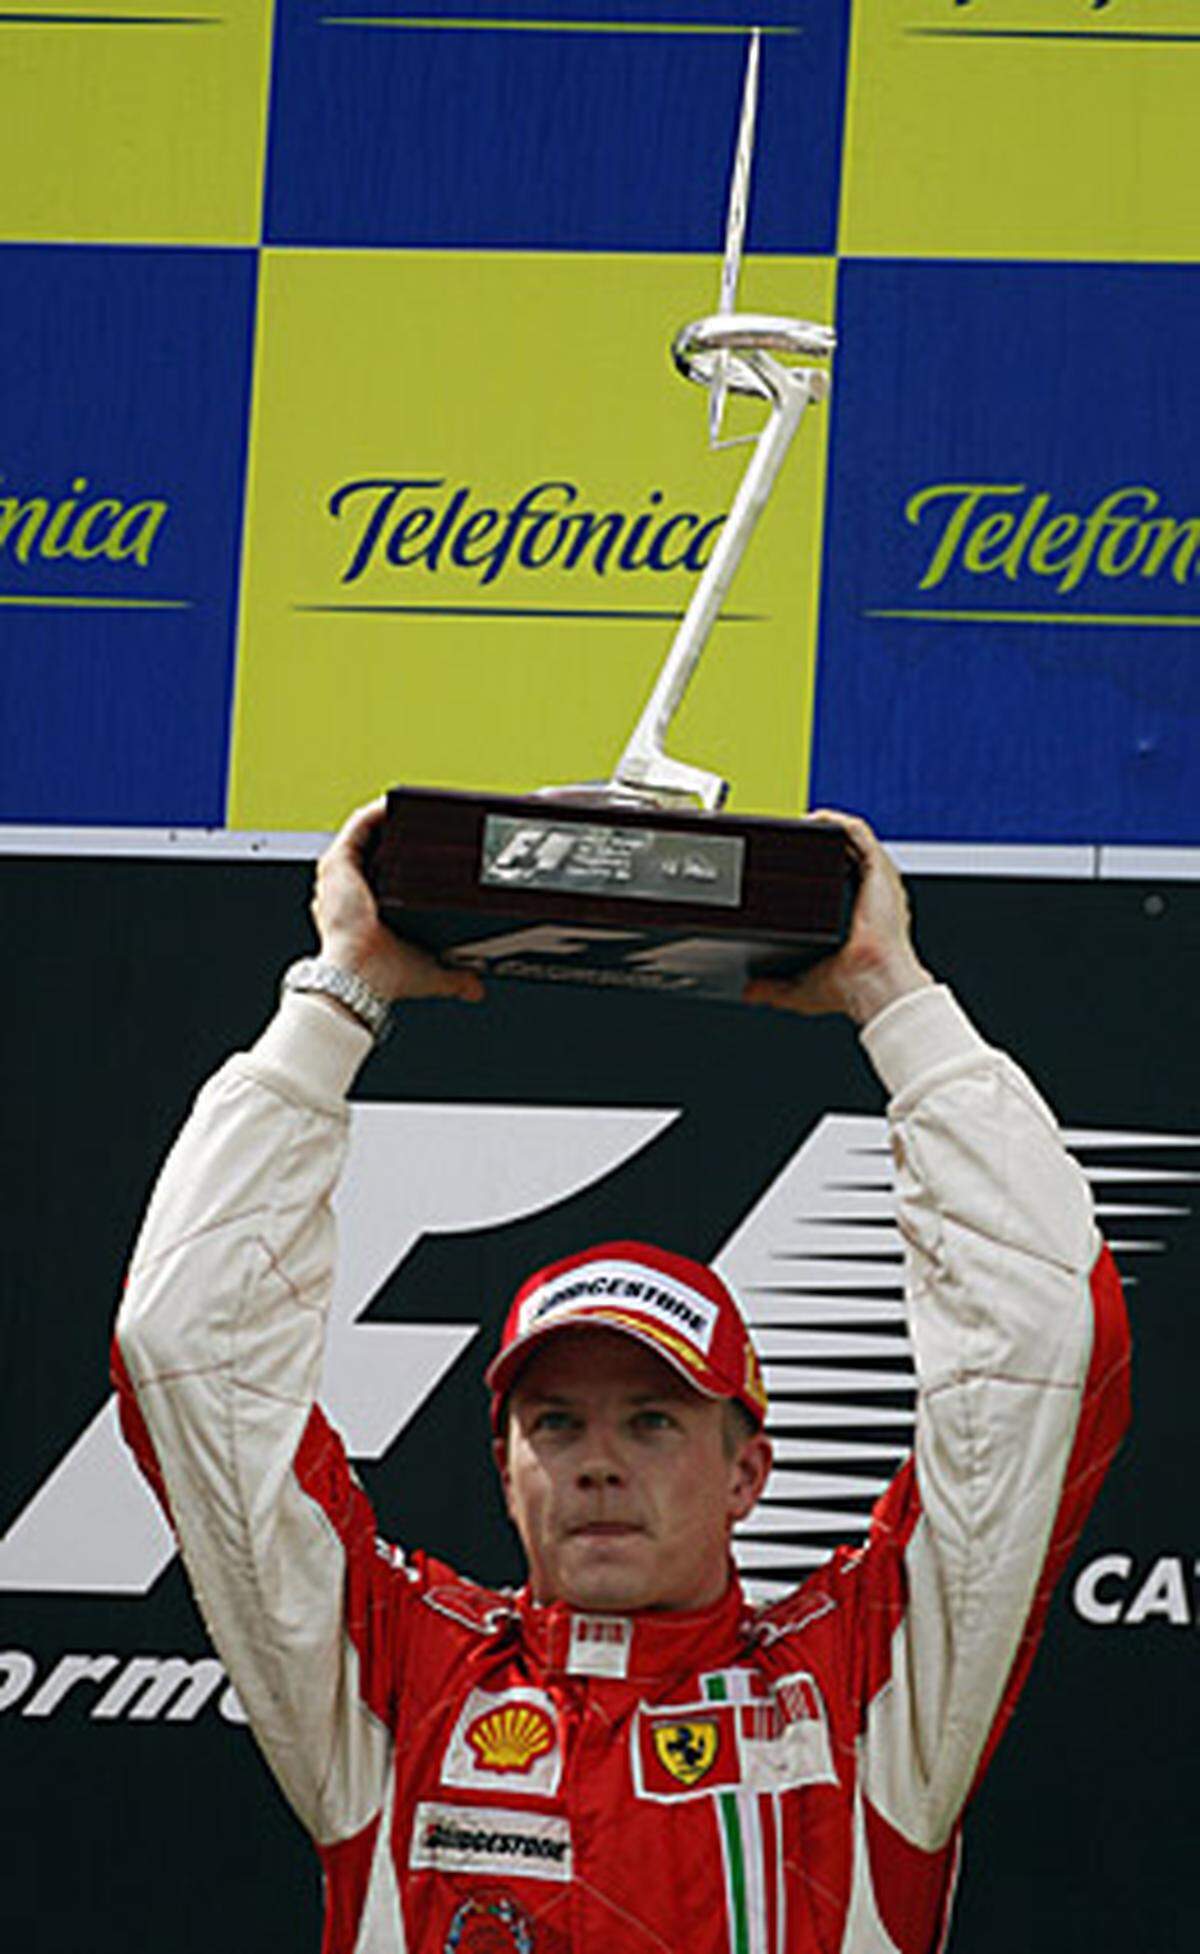 Streckenbezeichnung: Circuit de Catalunya  Streckenlänge: 4,655 km  Runden: 66  Renndistanz: 307,230 km  Sieger 2008: Kimi Räikkönen  Homepage: http://www.circuitcat.com